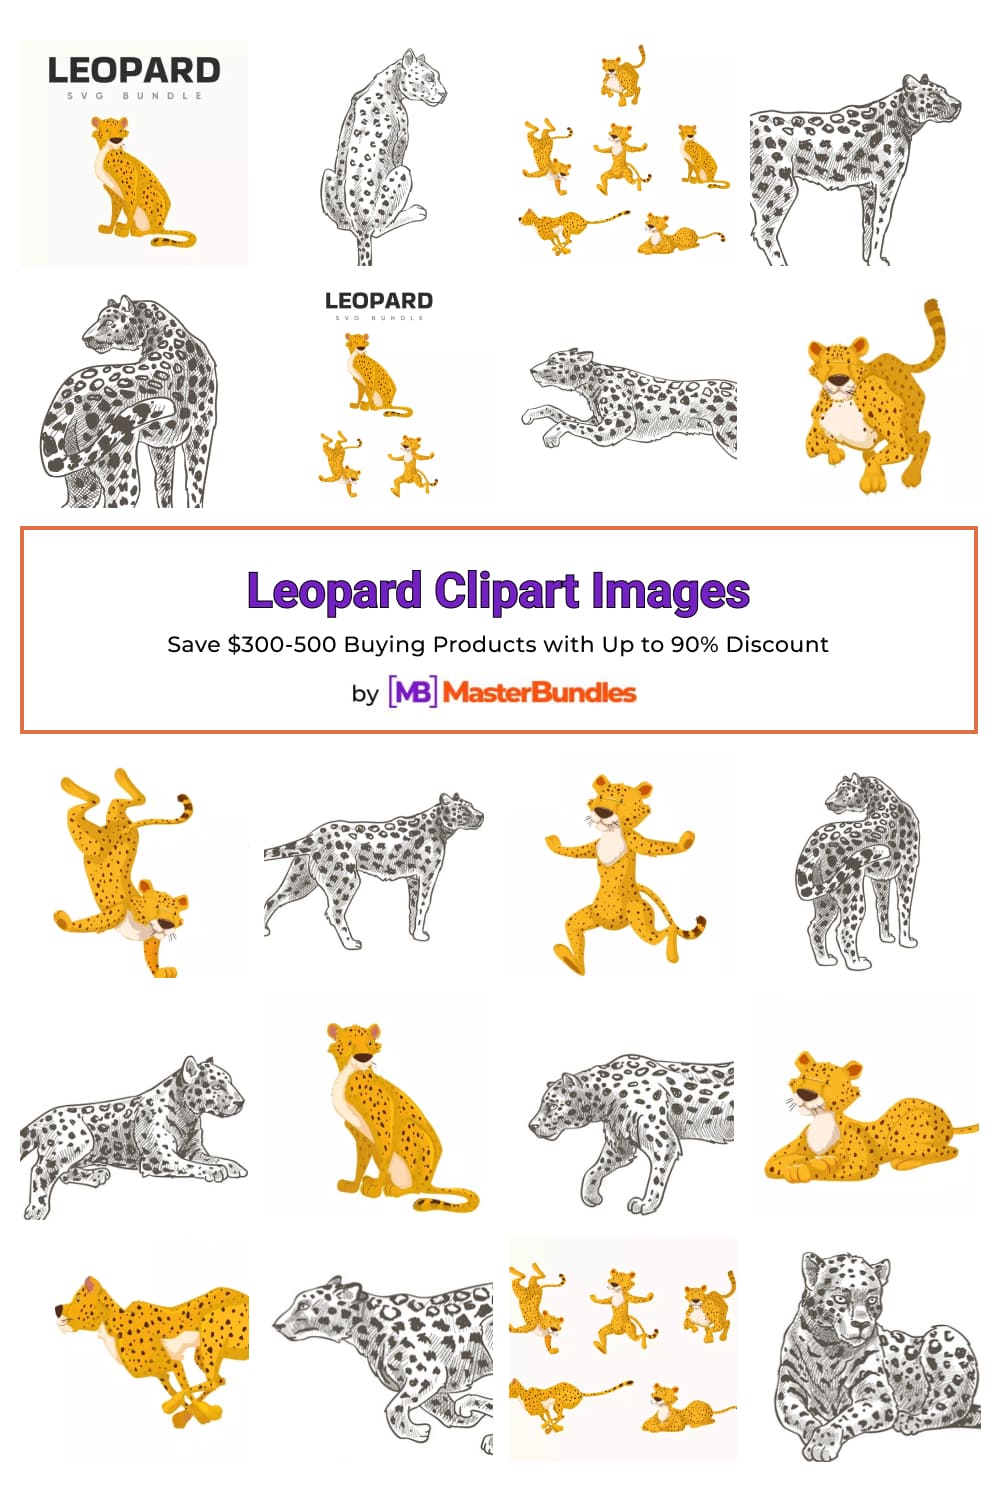 Leopard Clipart Images Pinterest.